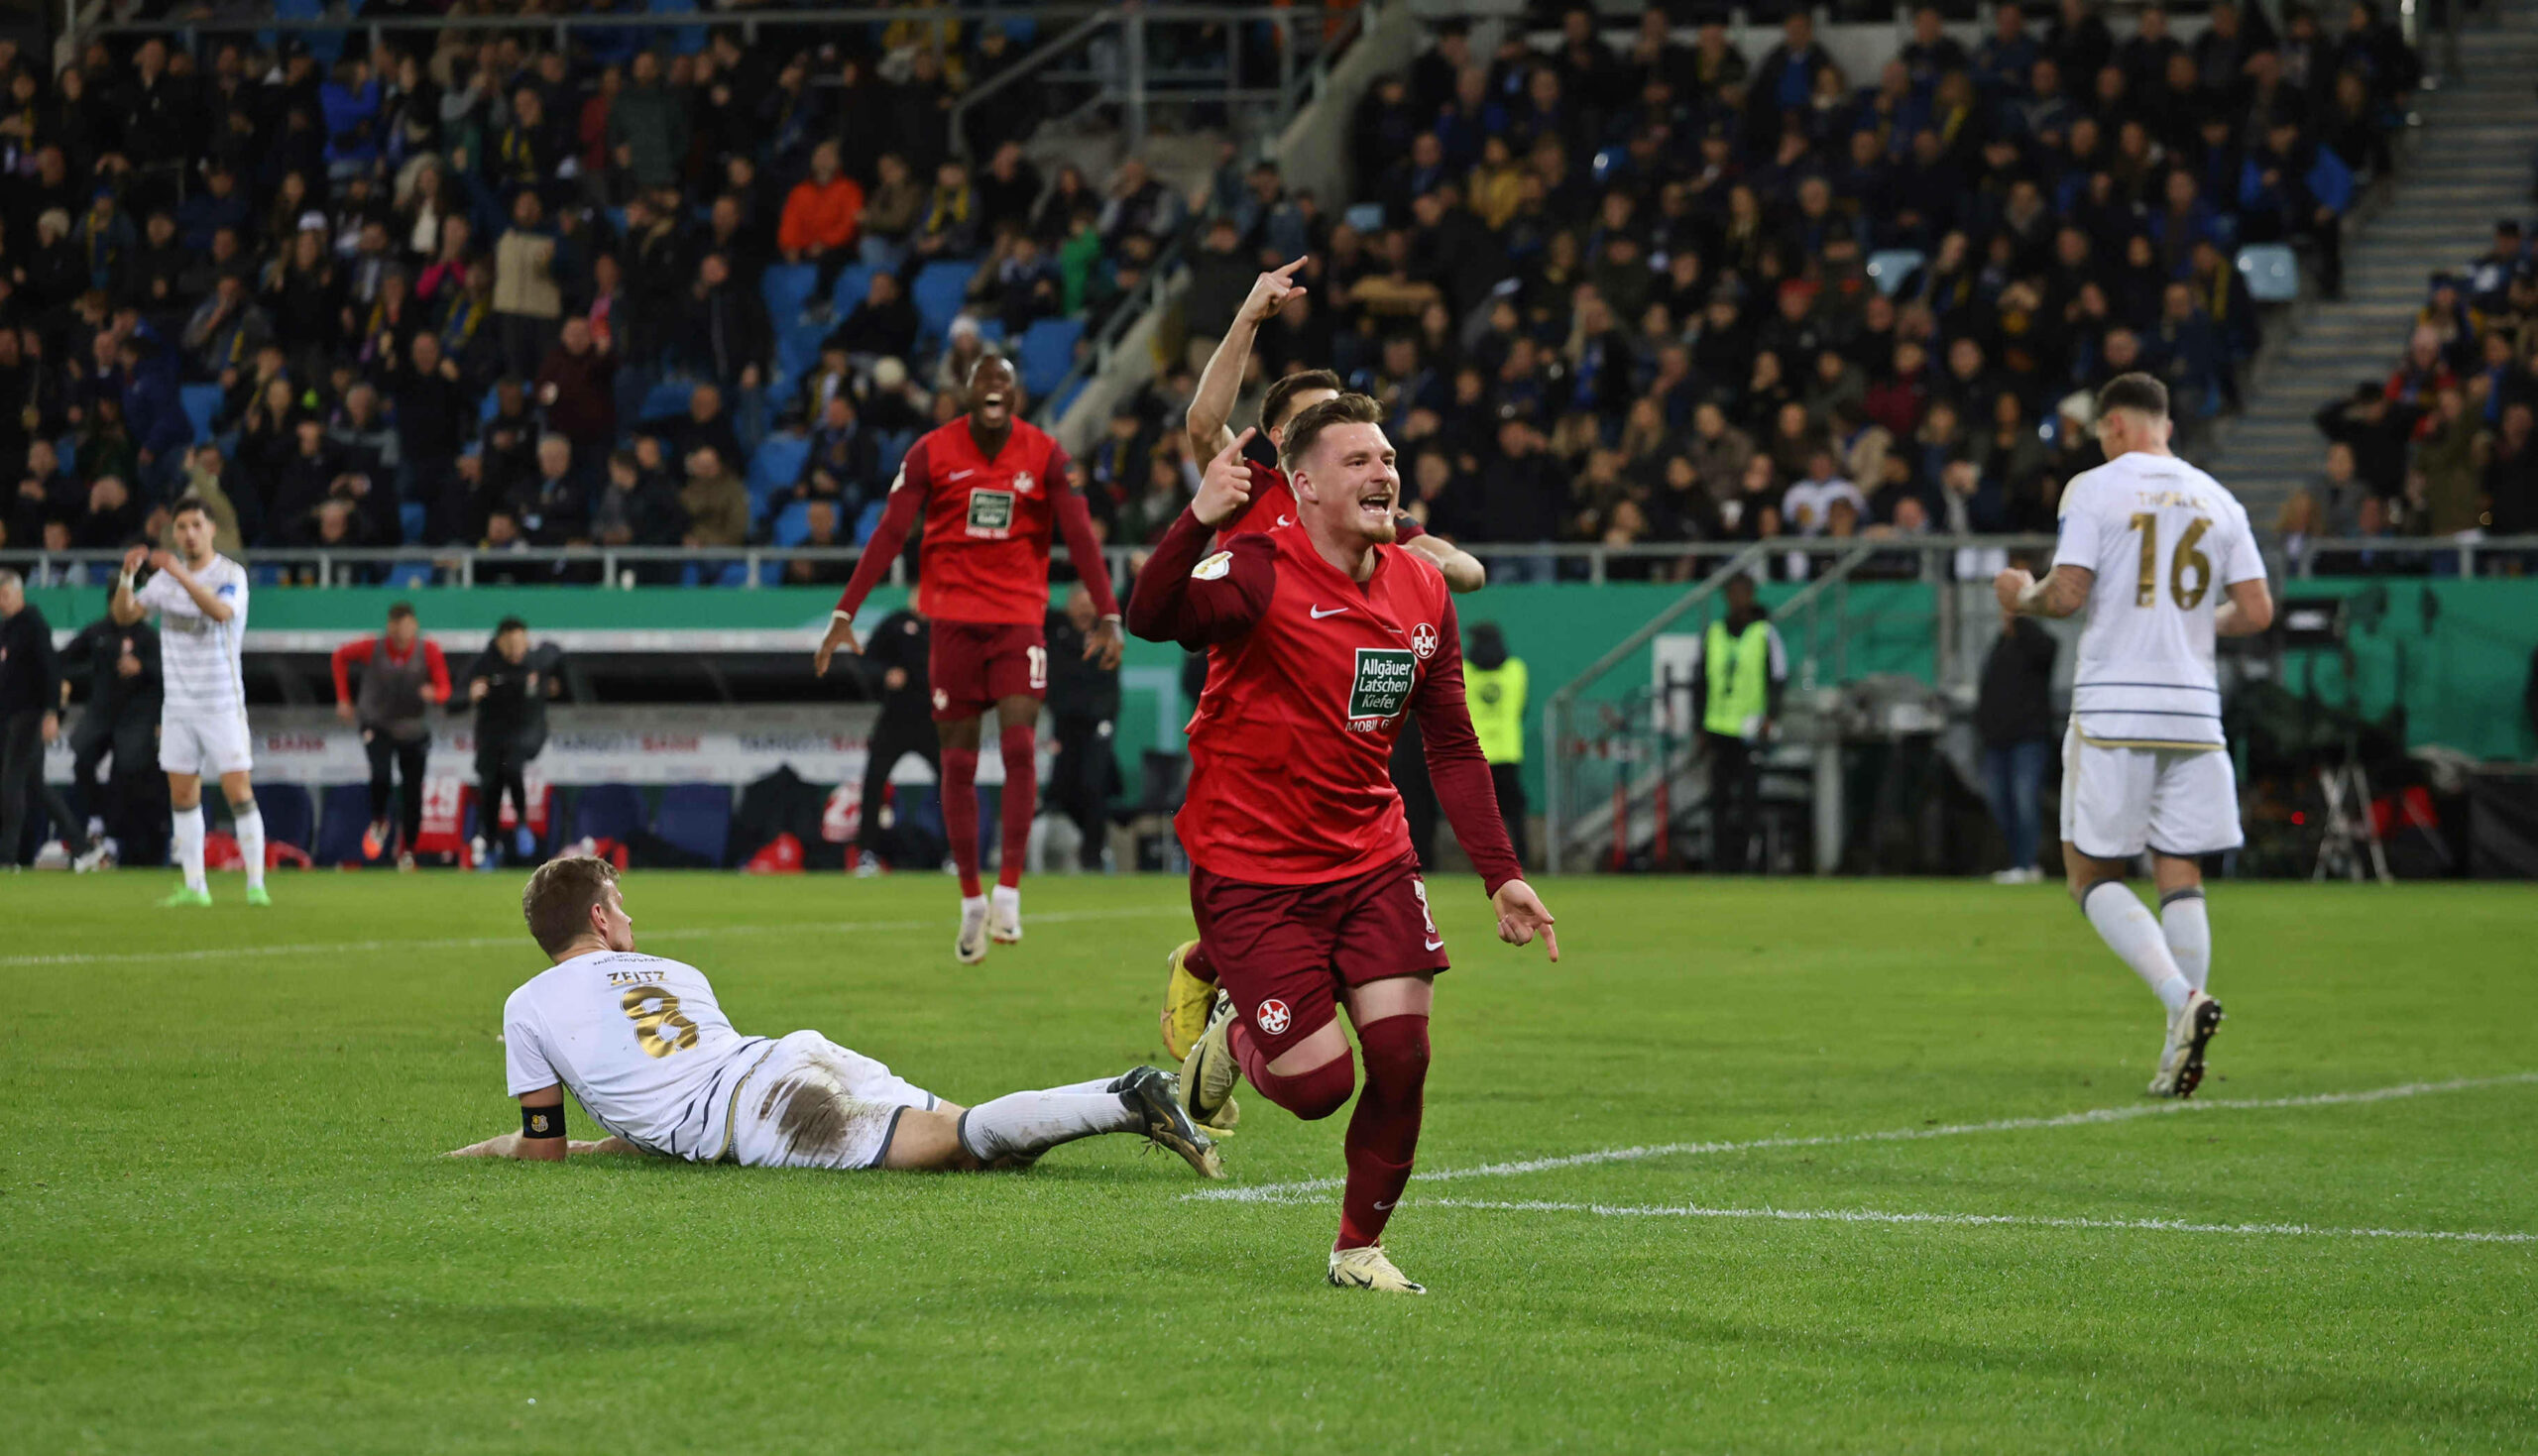 Kaiserslauterns Marlon Ritter feiert seinen Treffer zum 1:0. Für Saarbrücken der Anfang vom Ende. 